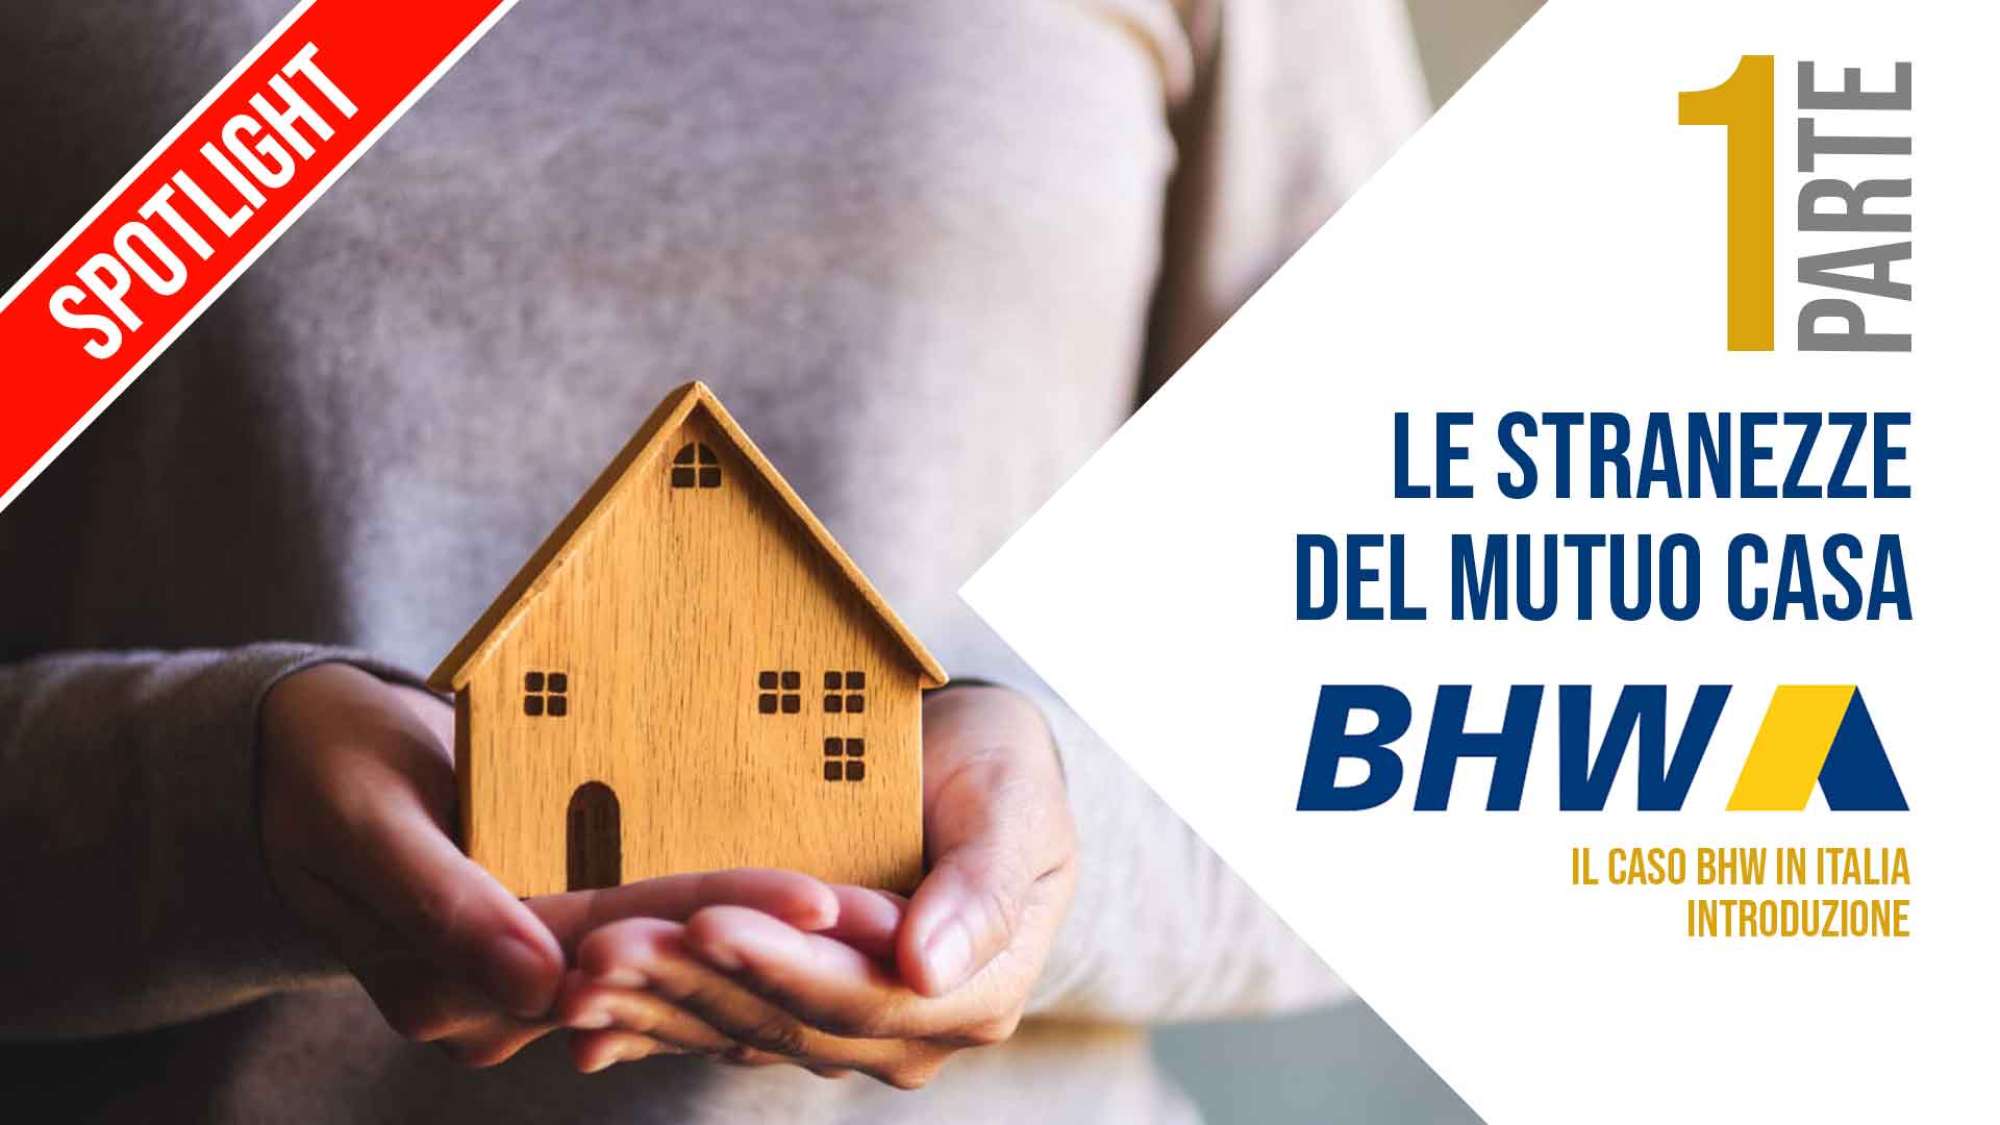 Le stranezze dei mutui BHW in Italia - Prima Parte